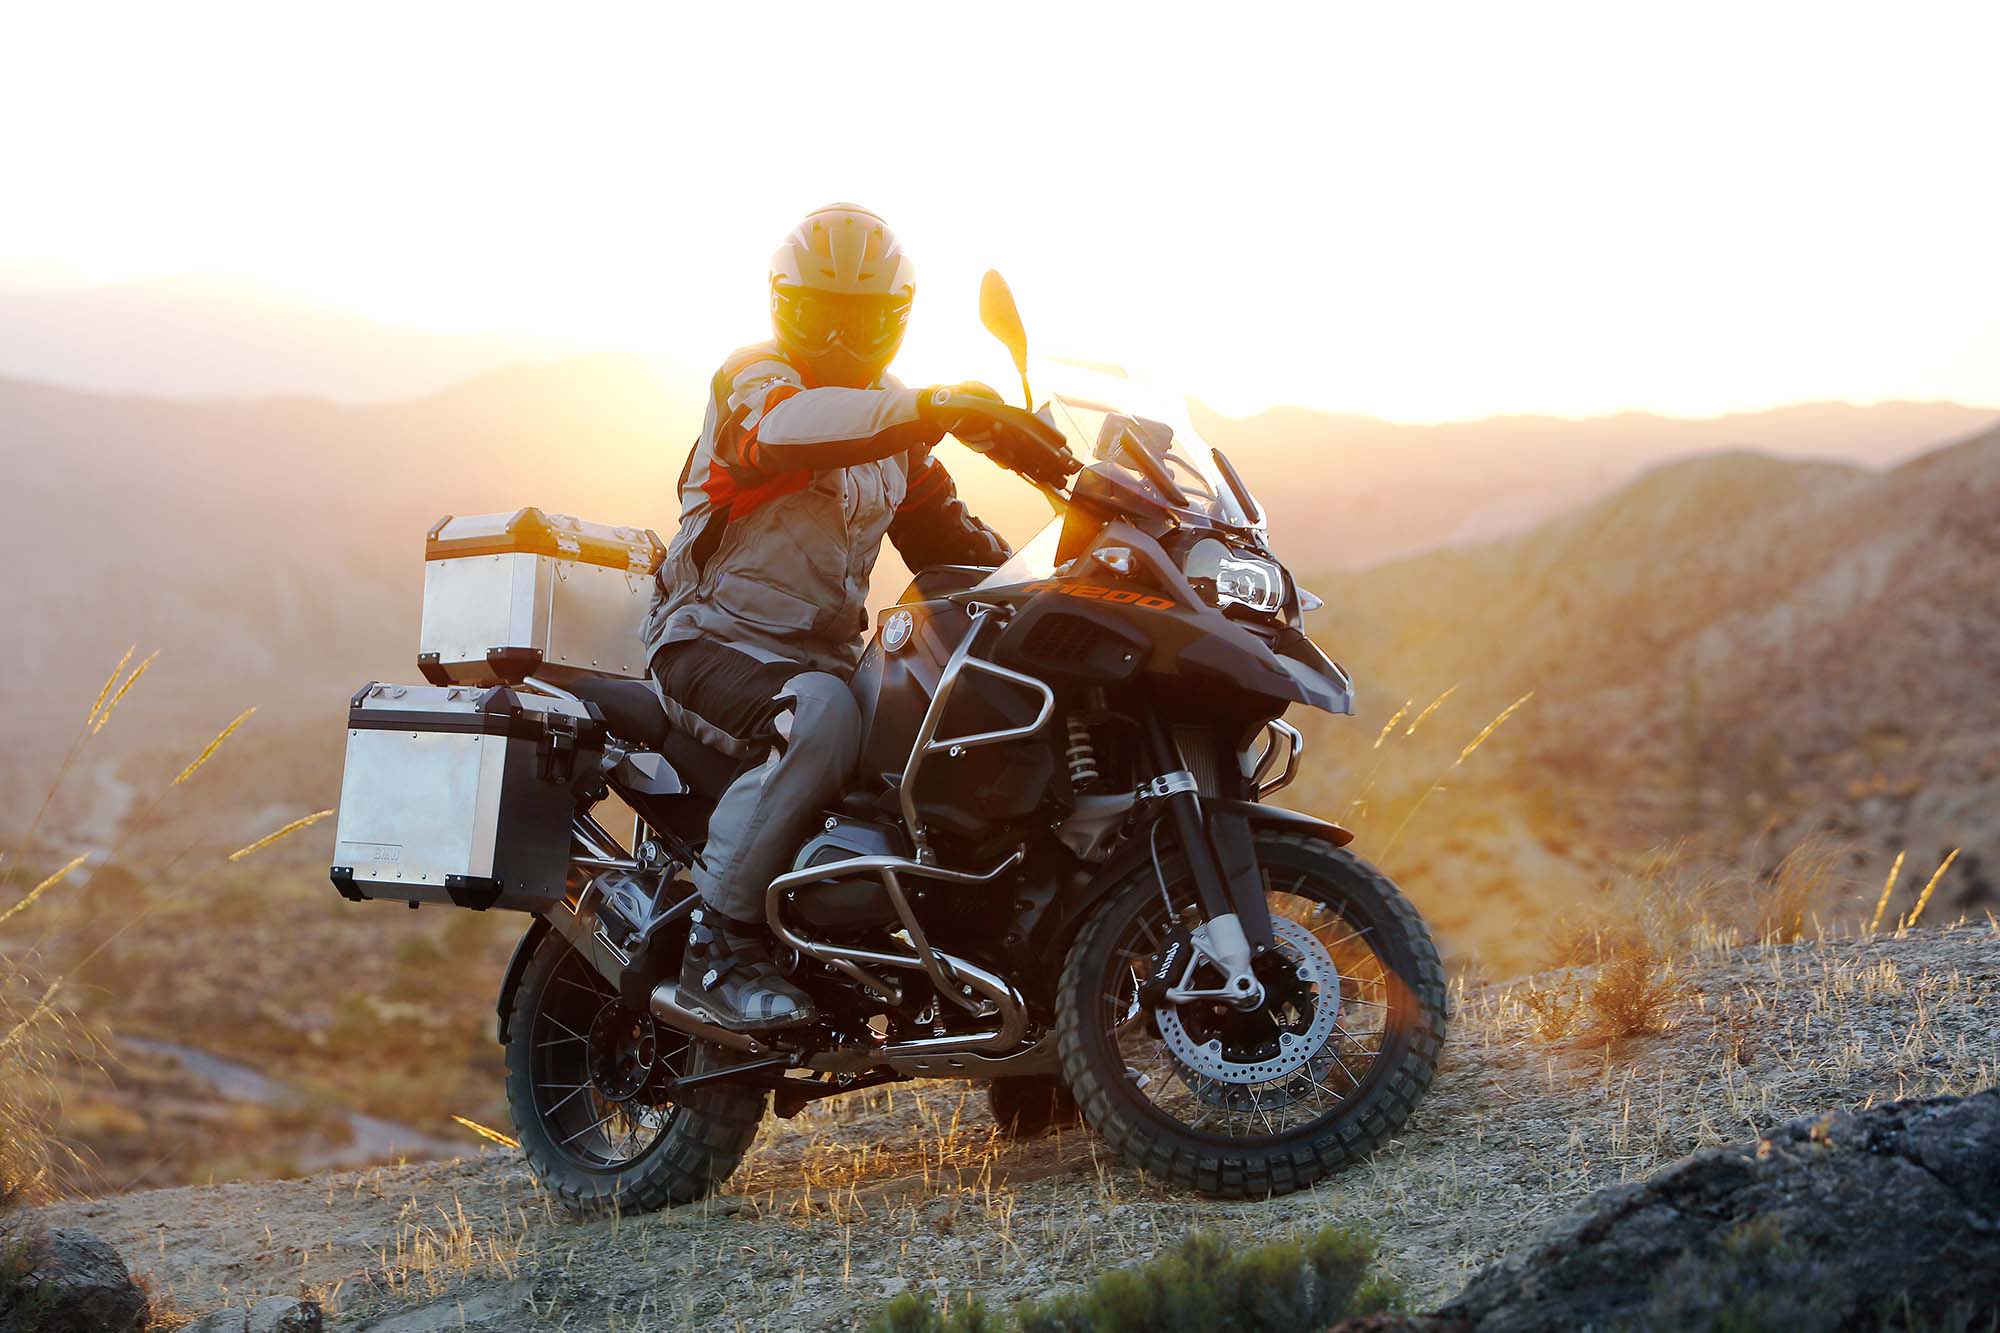 سفر با موتورسیکلت ؛ راهنمای جامع سفر با موتورسیکلت